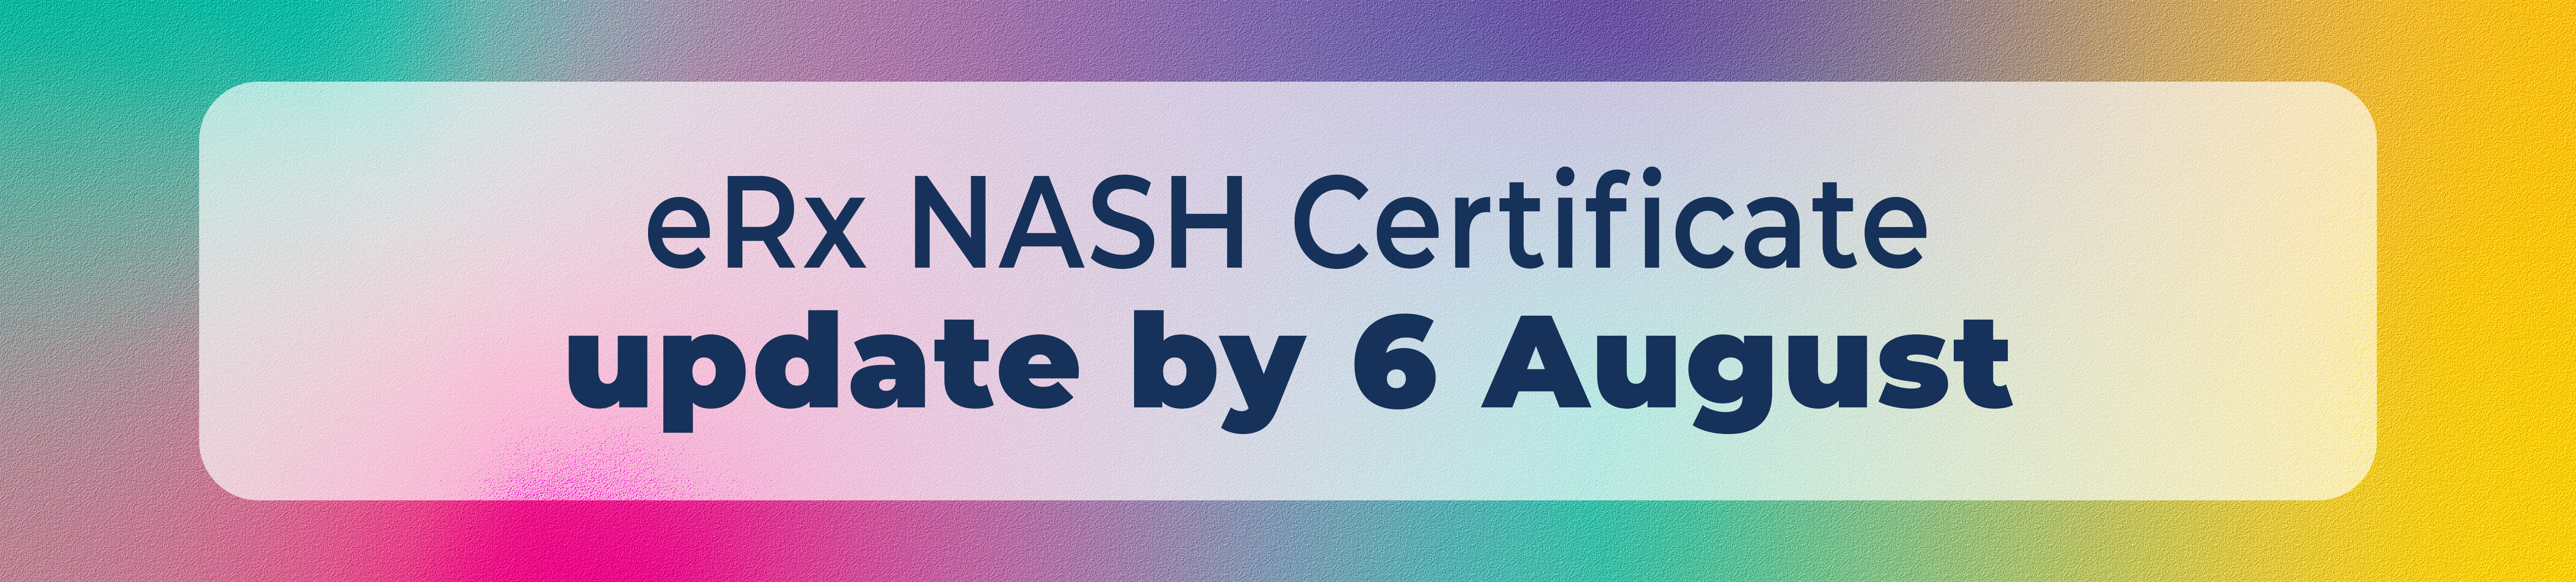 eRx NASH Certificate Update